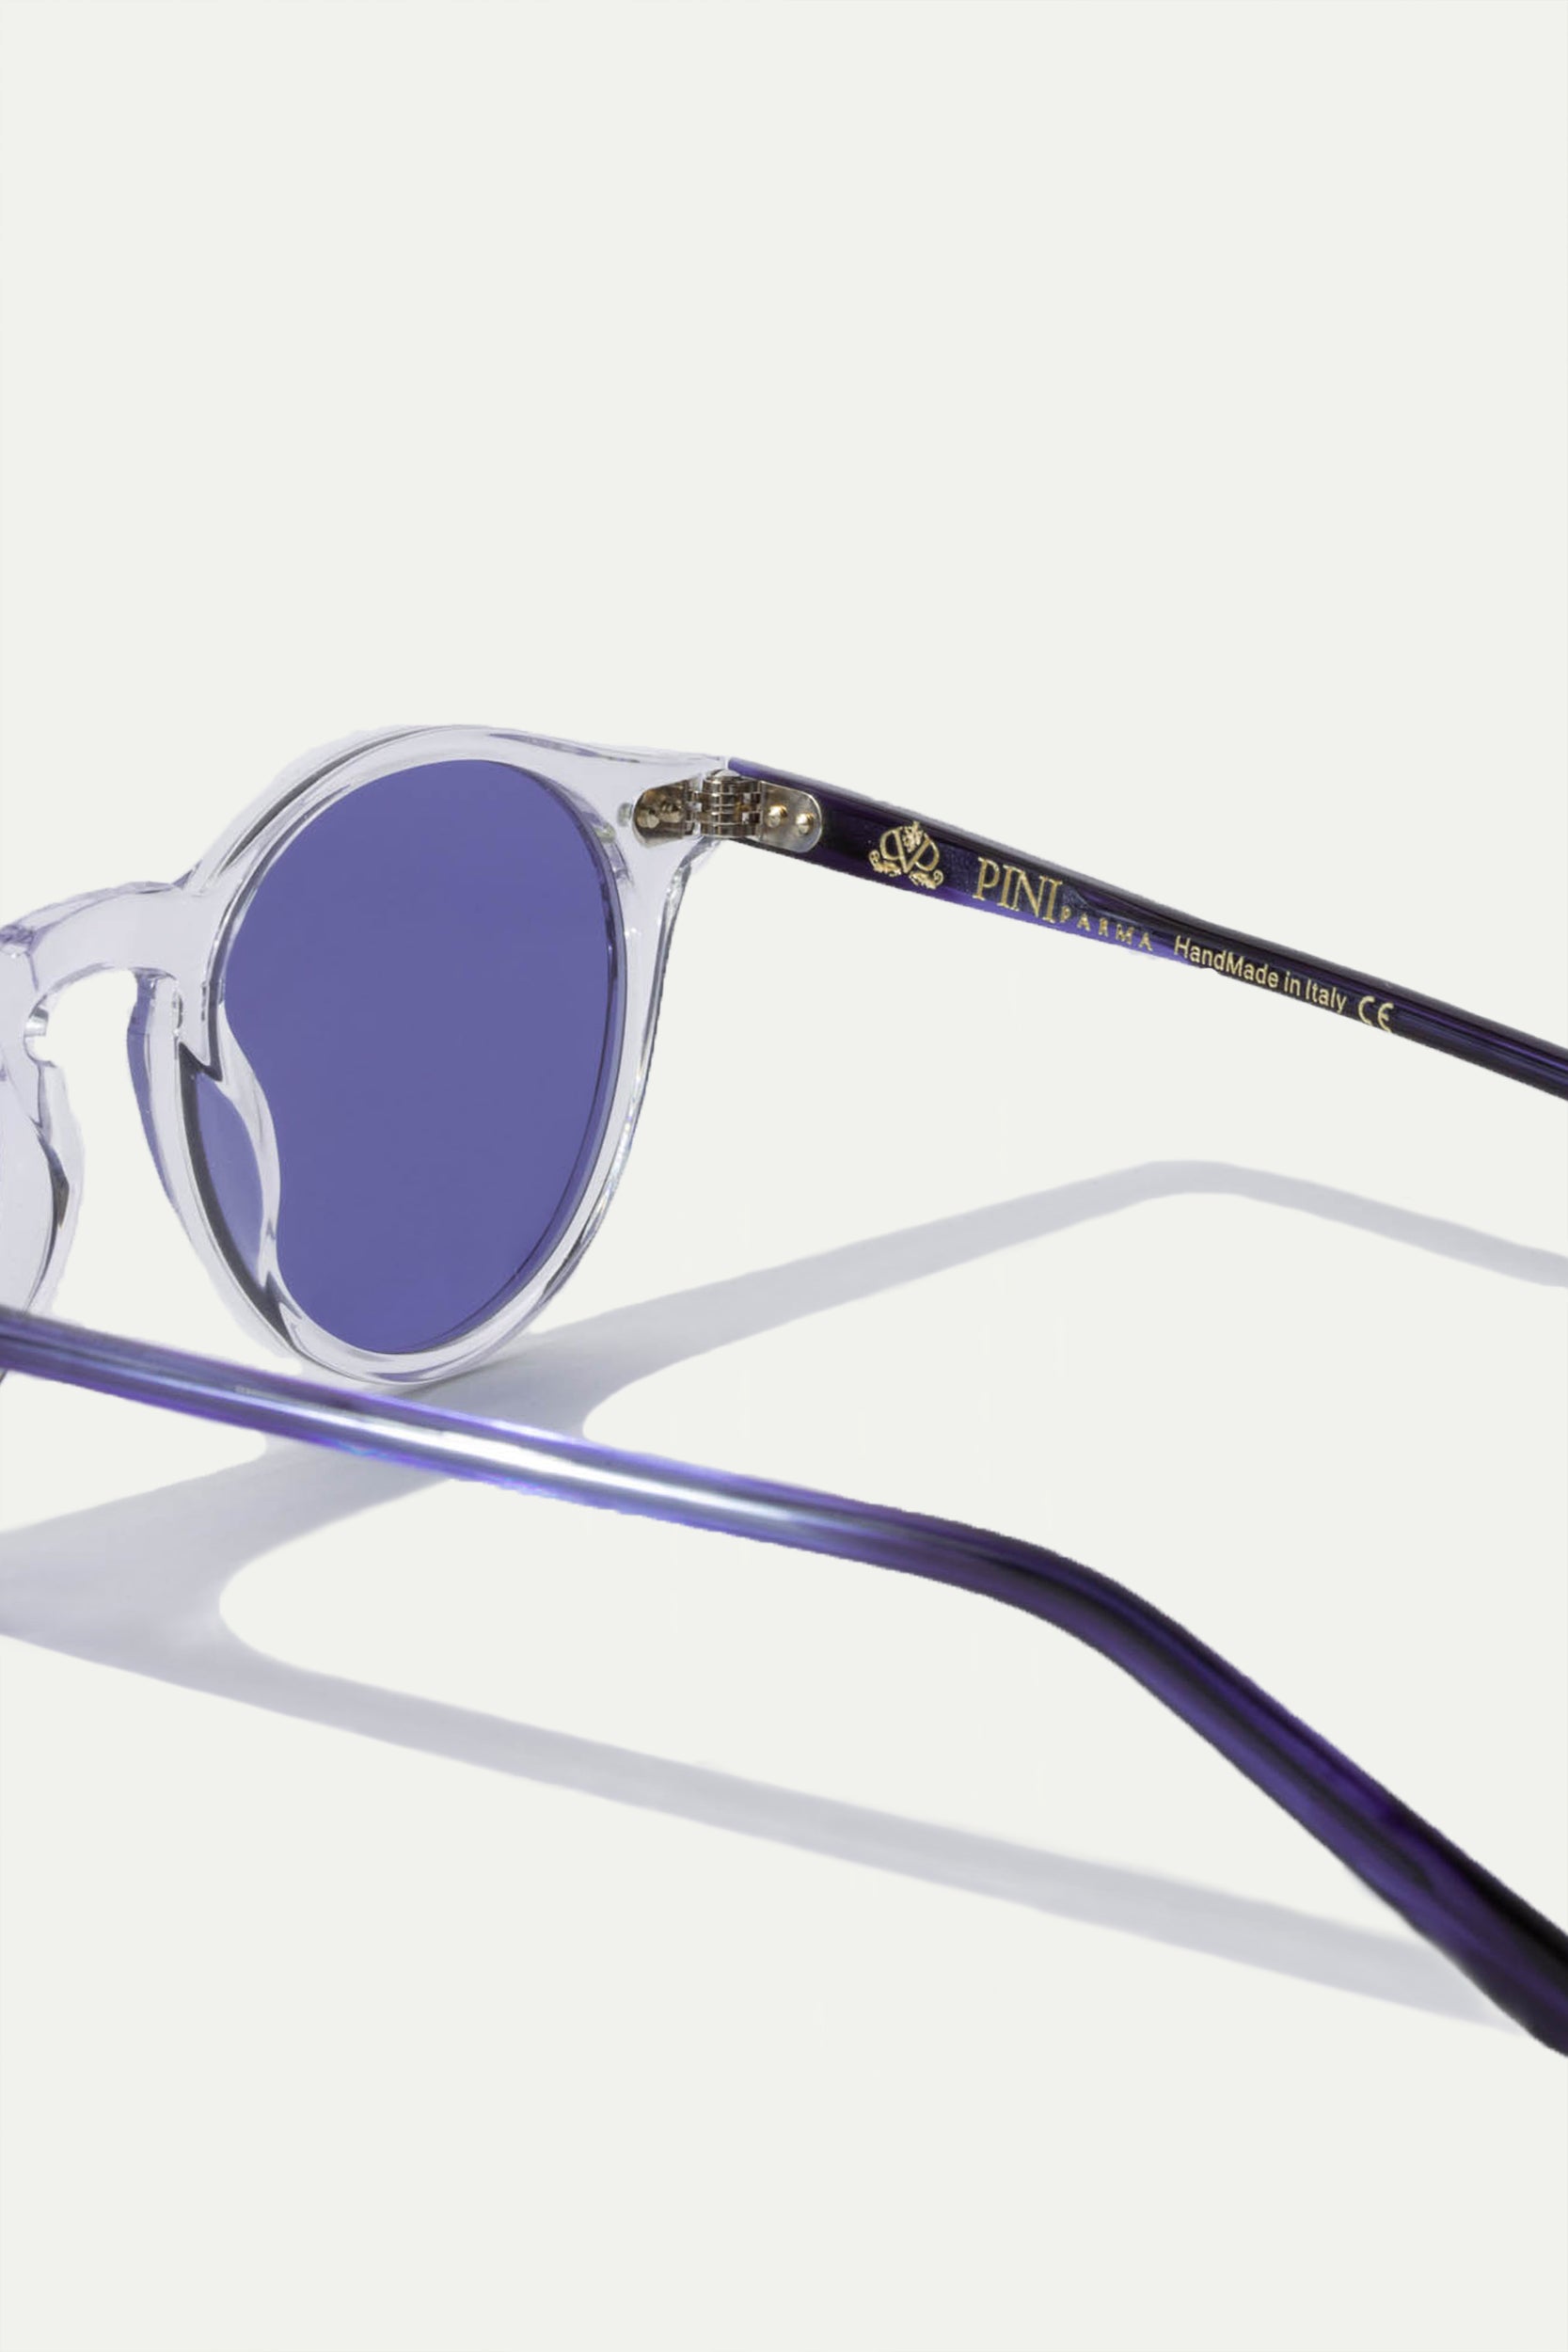 Clear sunglasses Portofino - Made in Italy